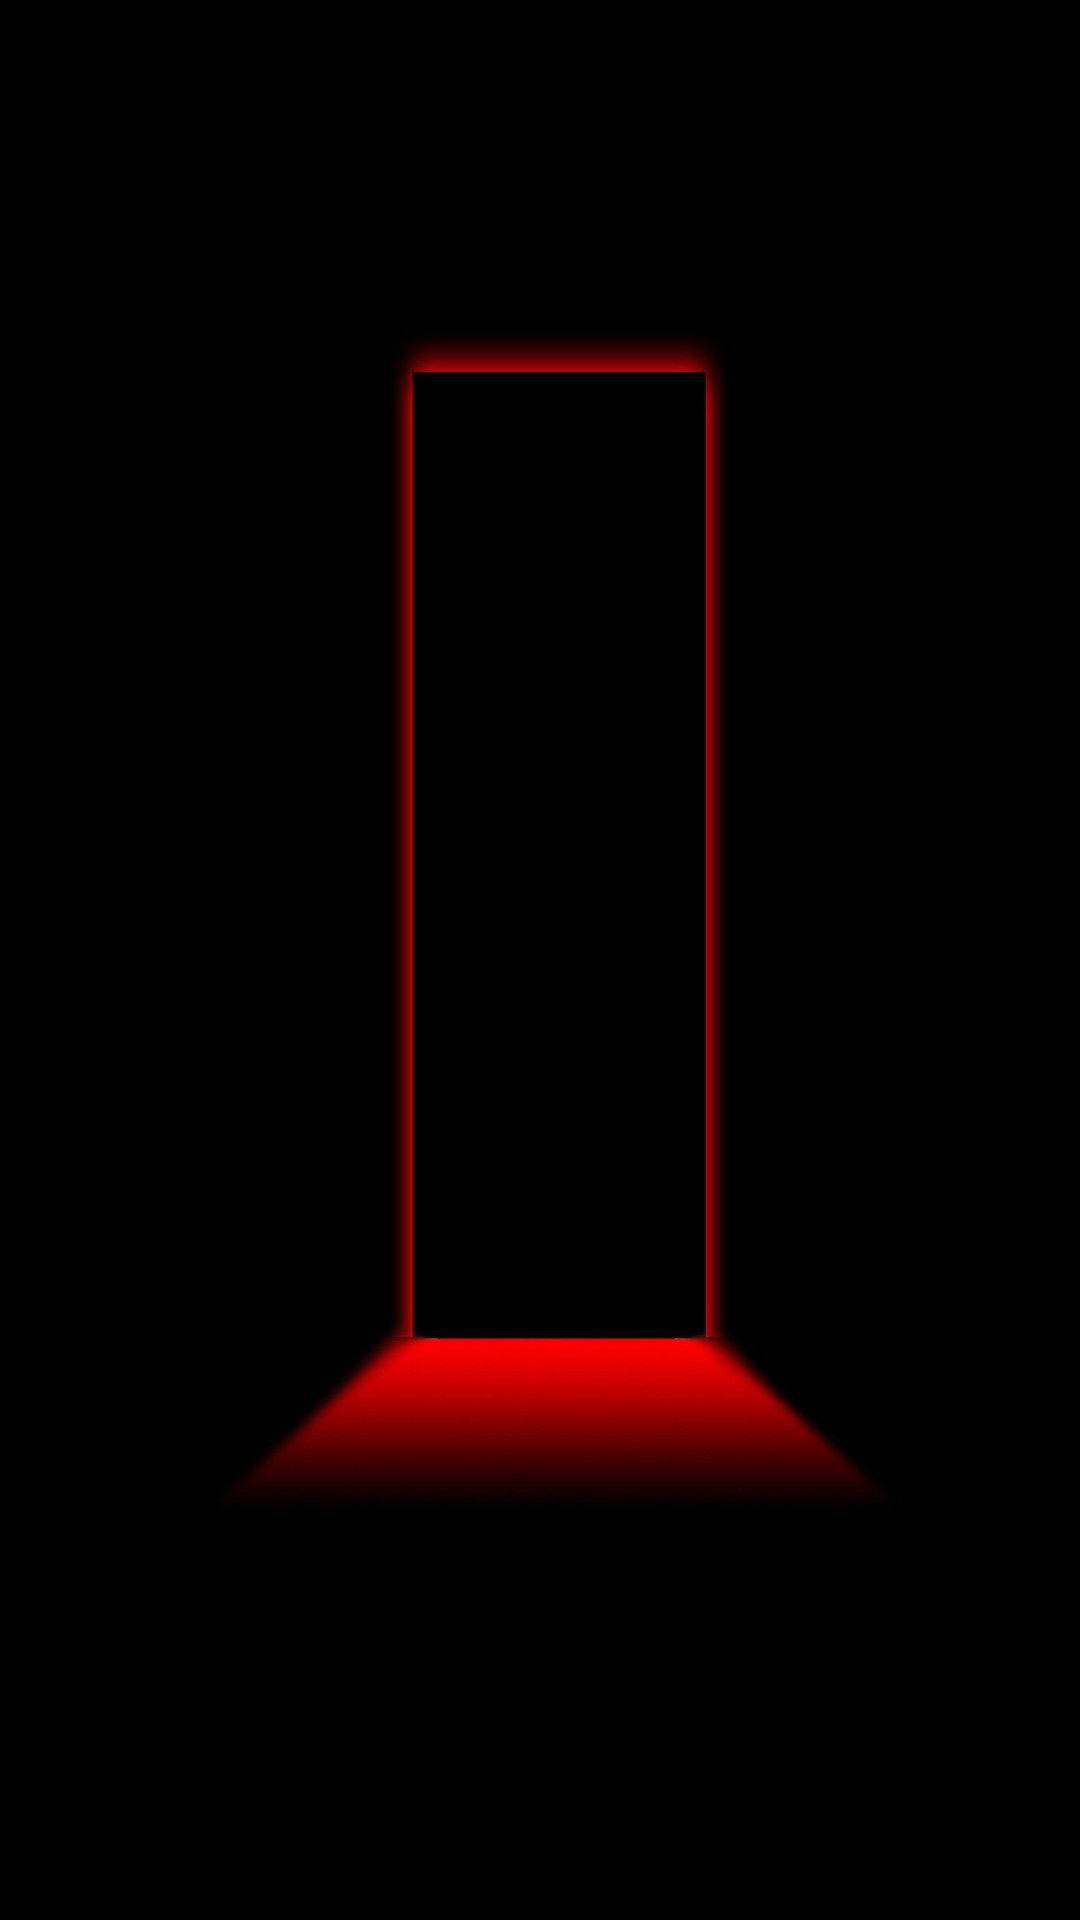 Door-shaped Light Neon Red Iphone Wallpaper